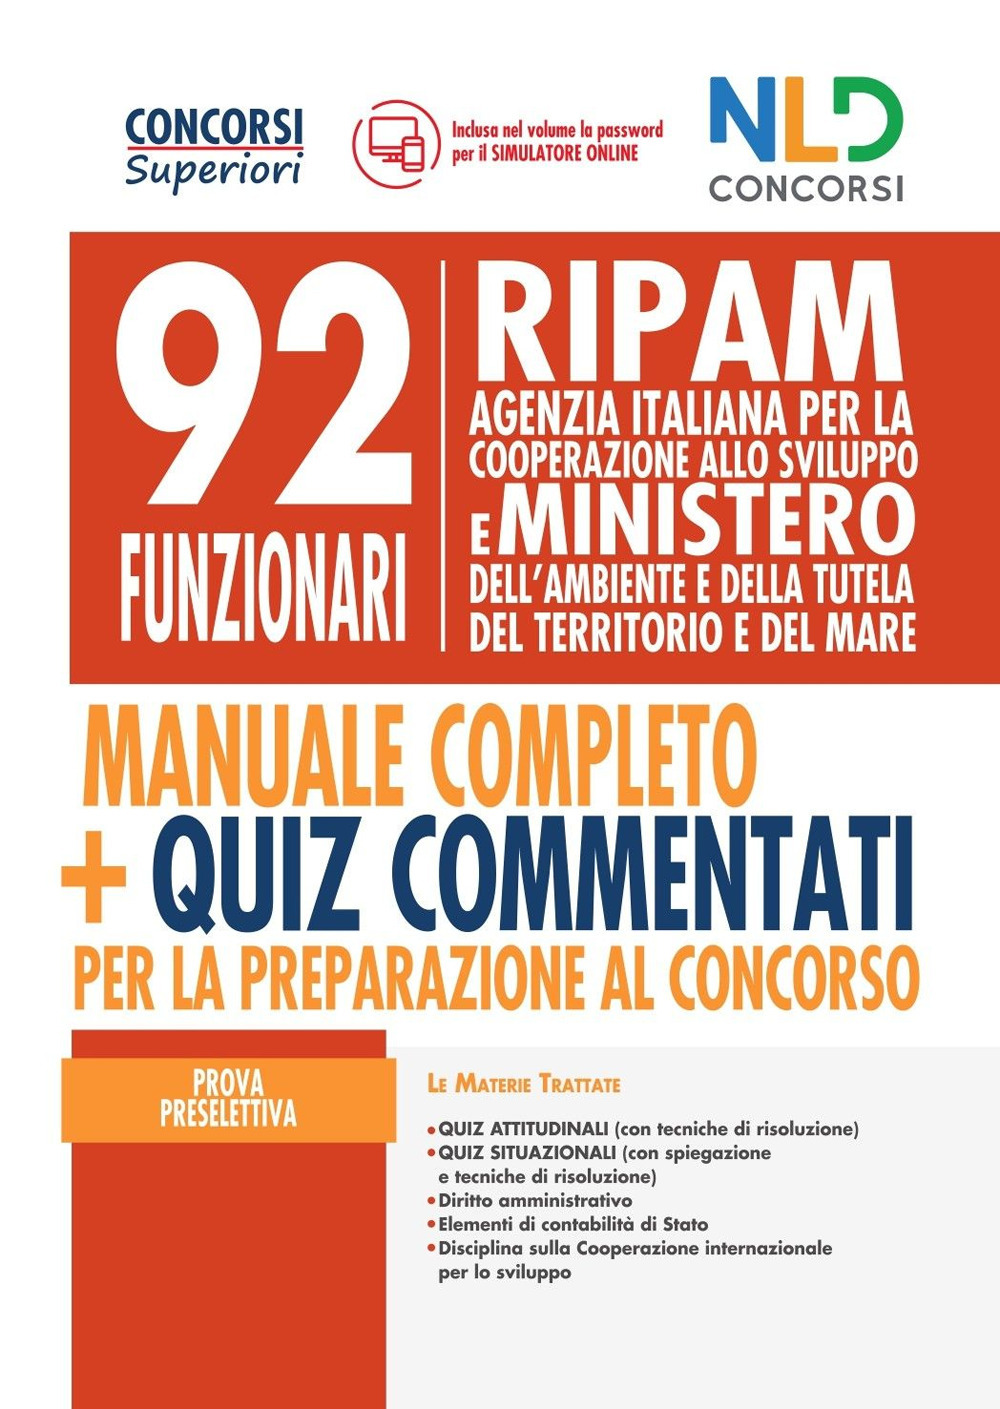 92 Funzionari RIPAM: manuale completo + quiz commentati per la preparazione al concorso